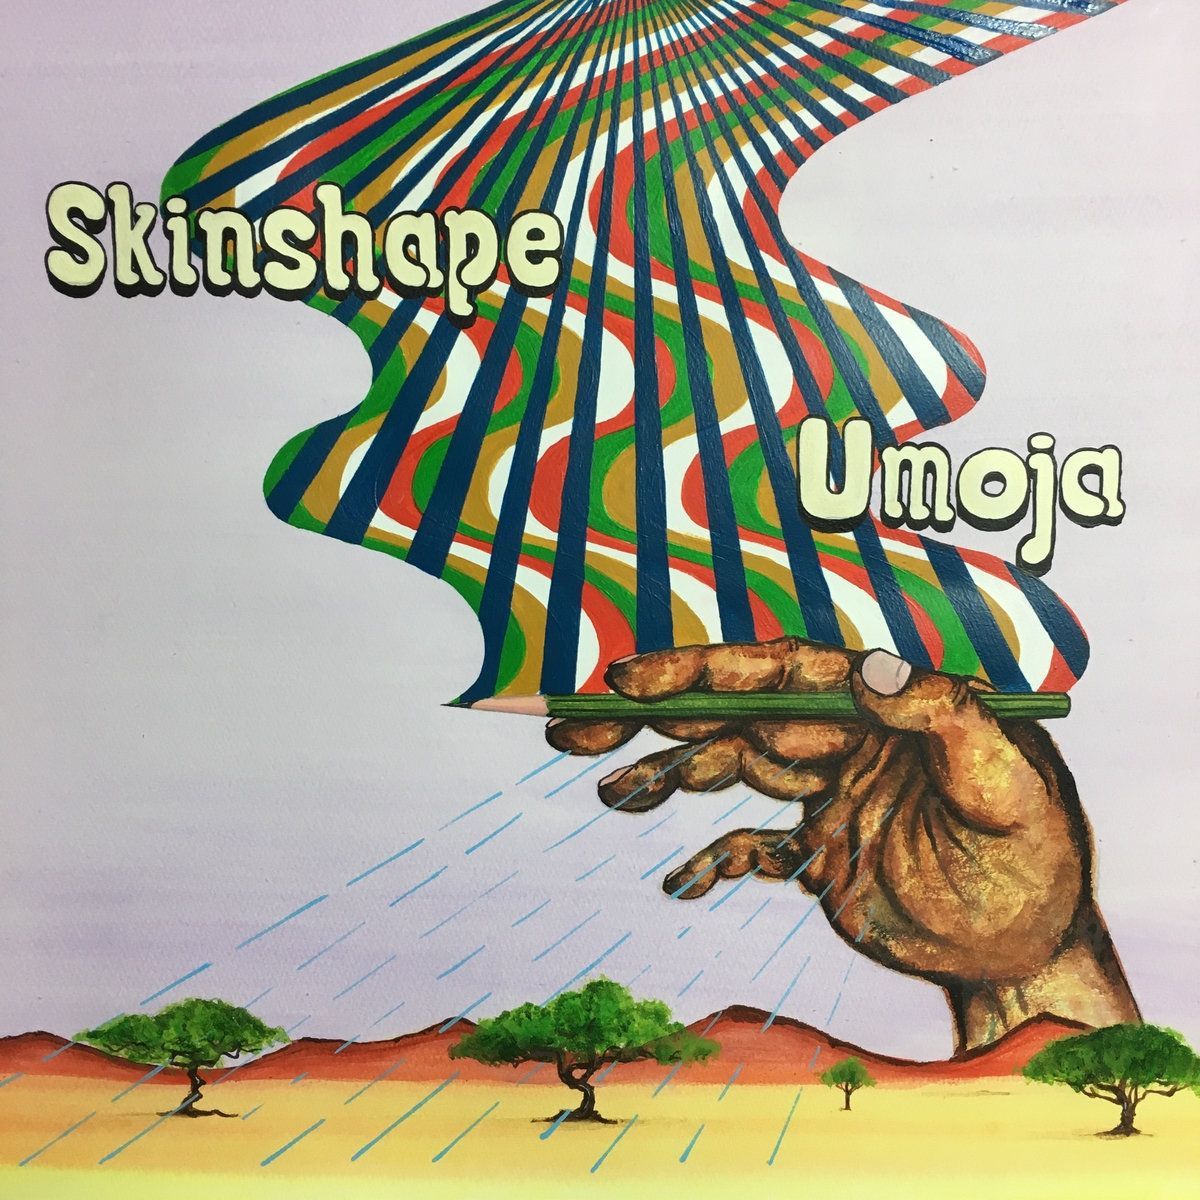 Imagem do álbum Umoja do(a) artista Skinshape